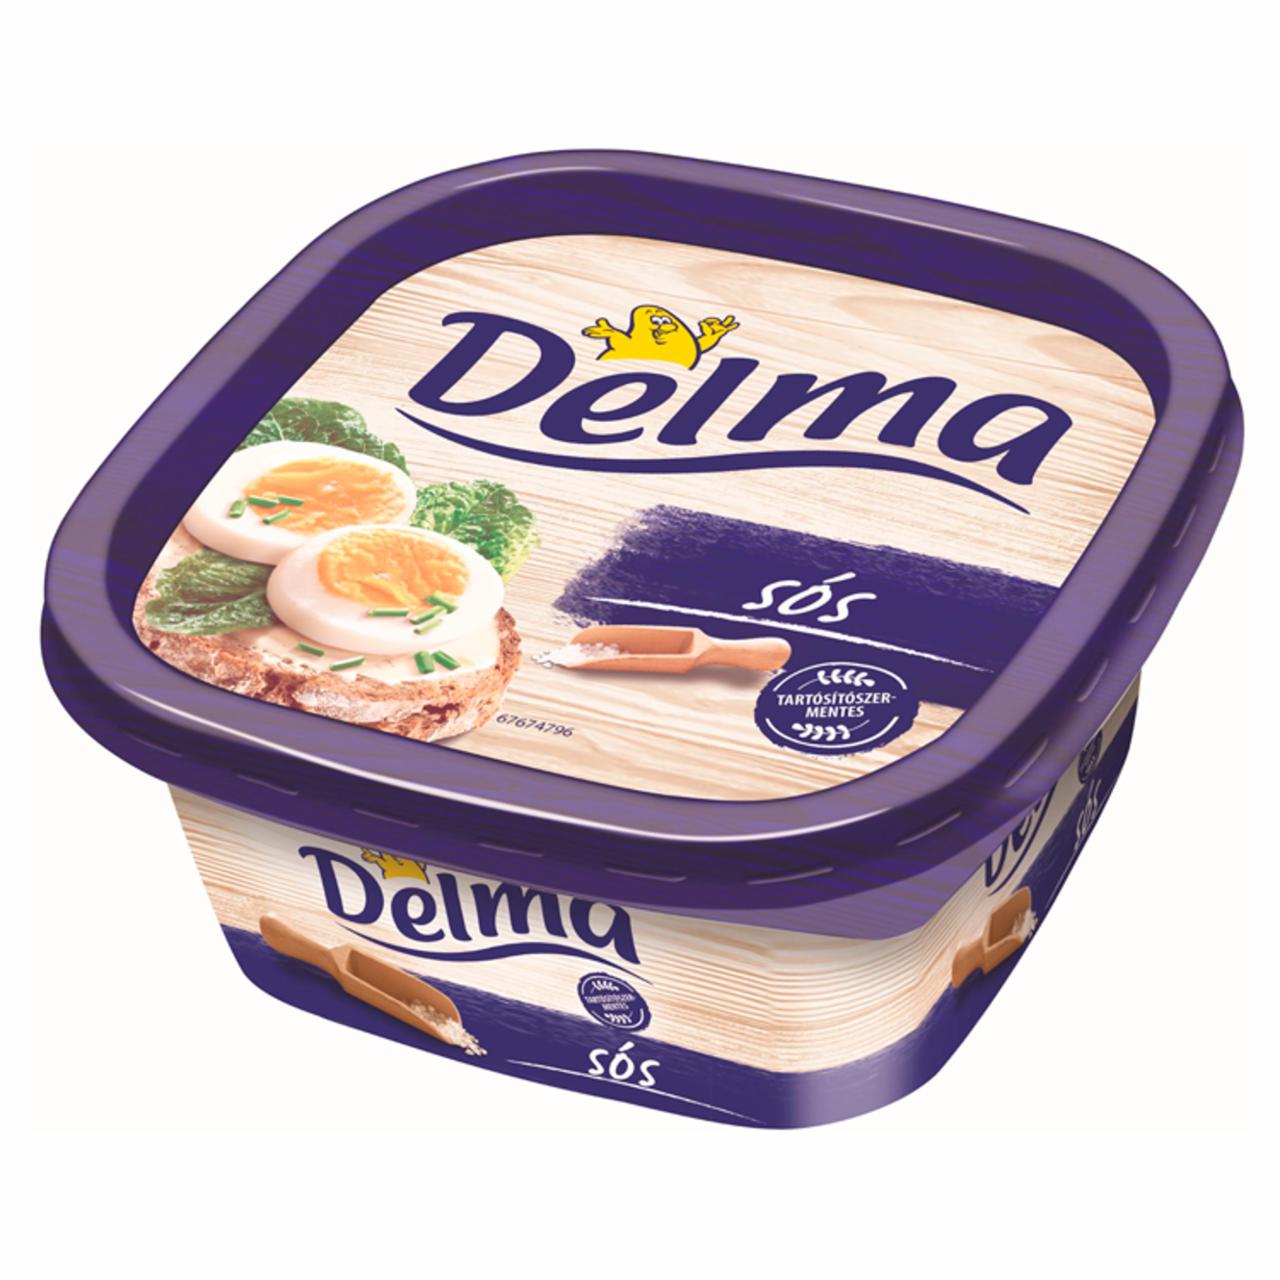 Képek - Delma light enyhén sós csészés margarin 500 g